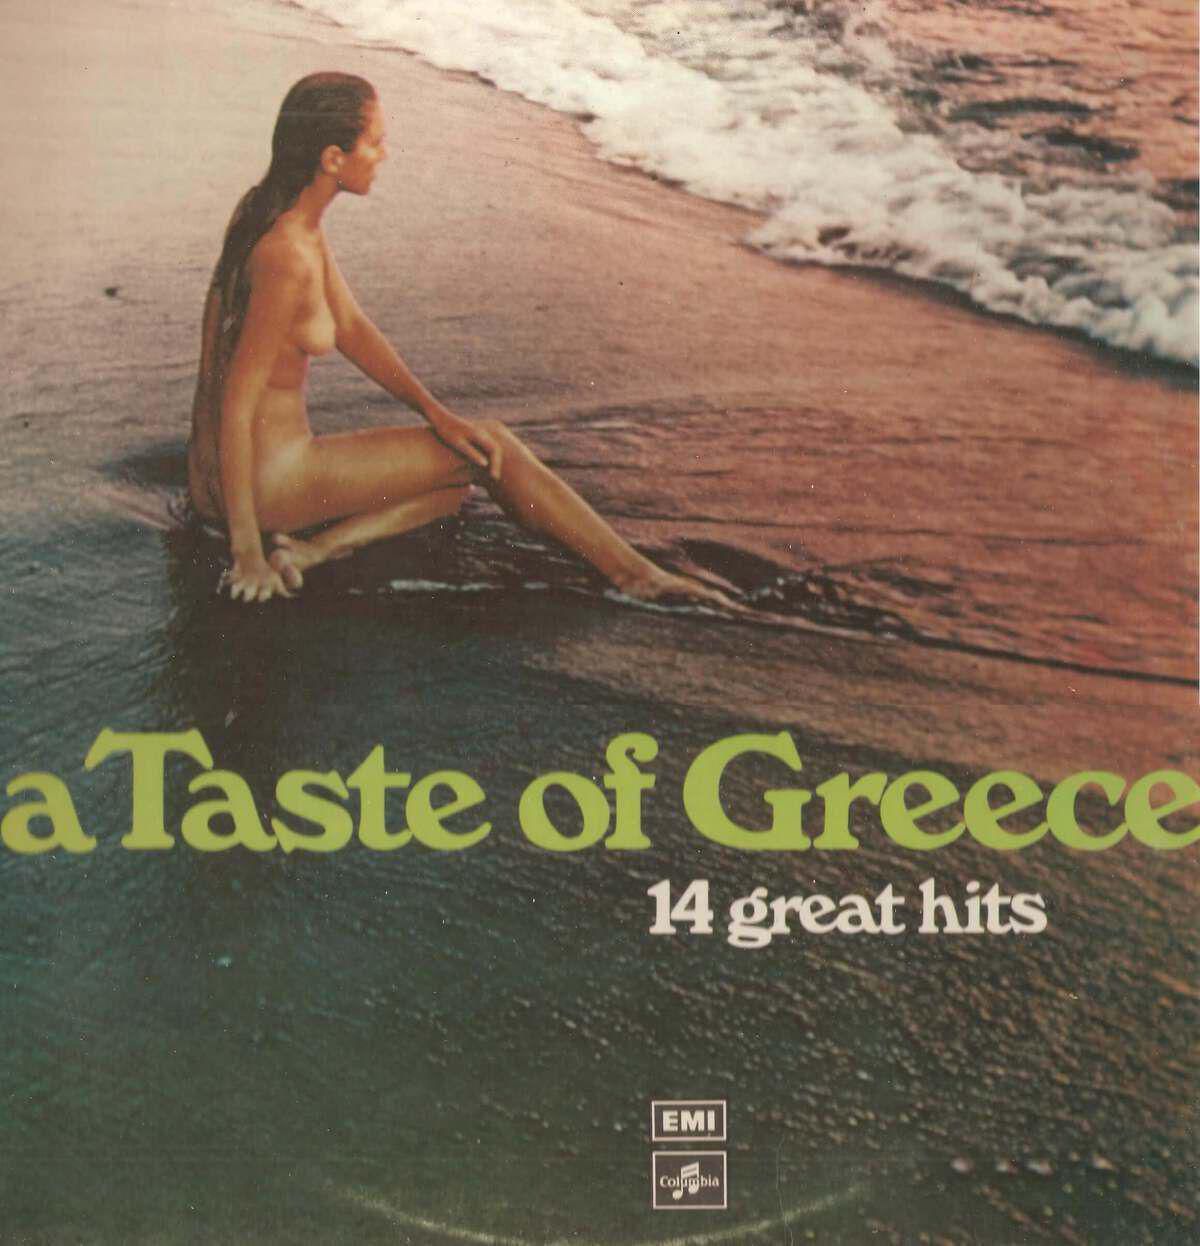 1.A taste of Greece